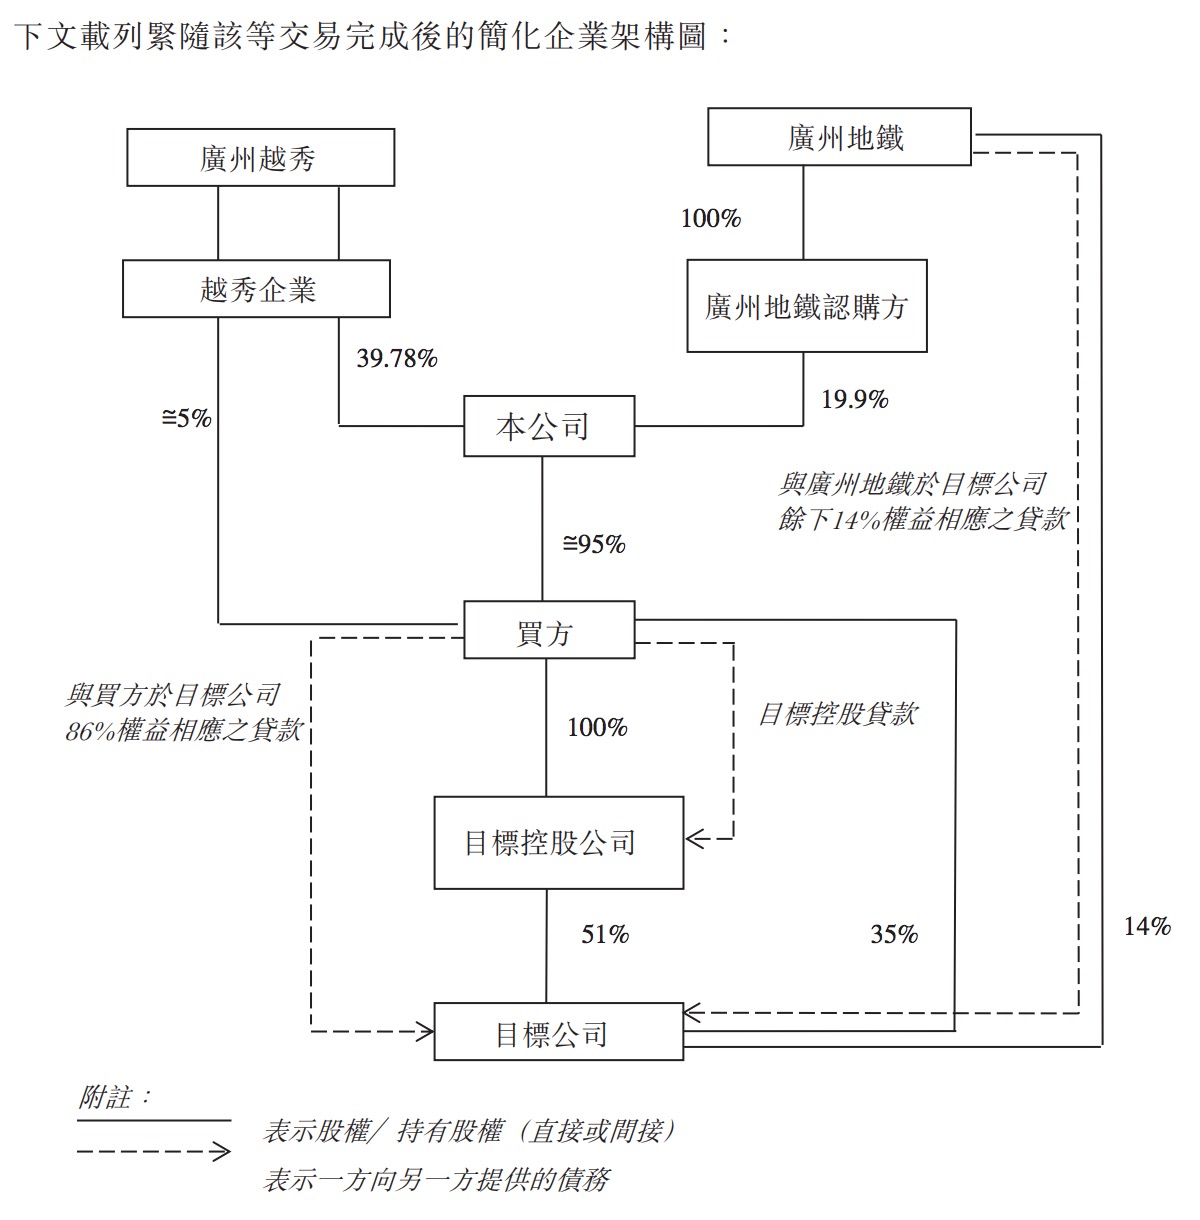 广州地铁认购方按每股认购股份2.00港元的认购价 认购30.